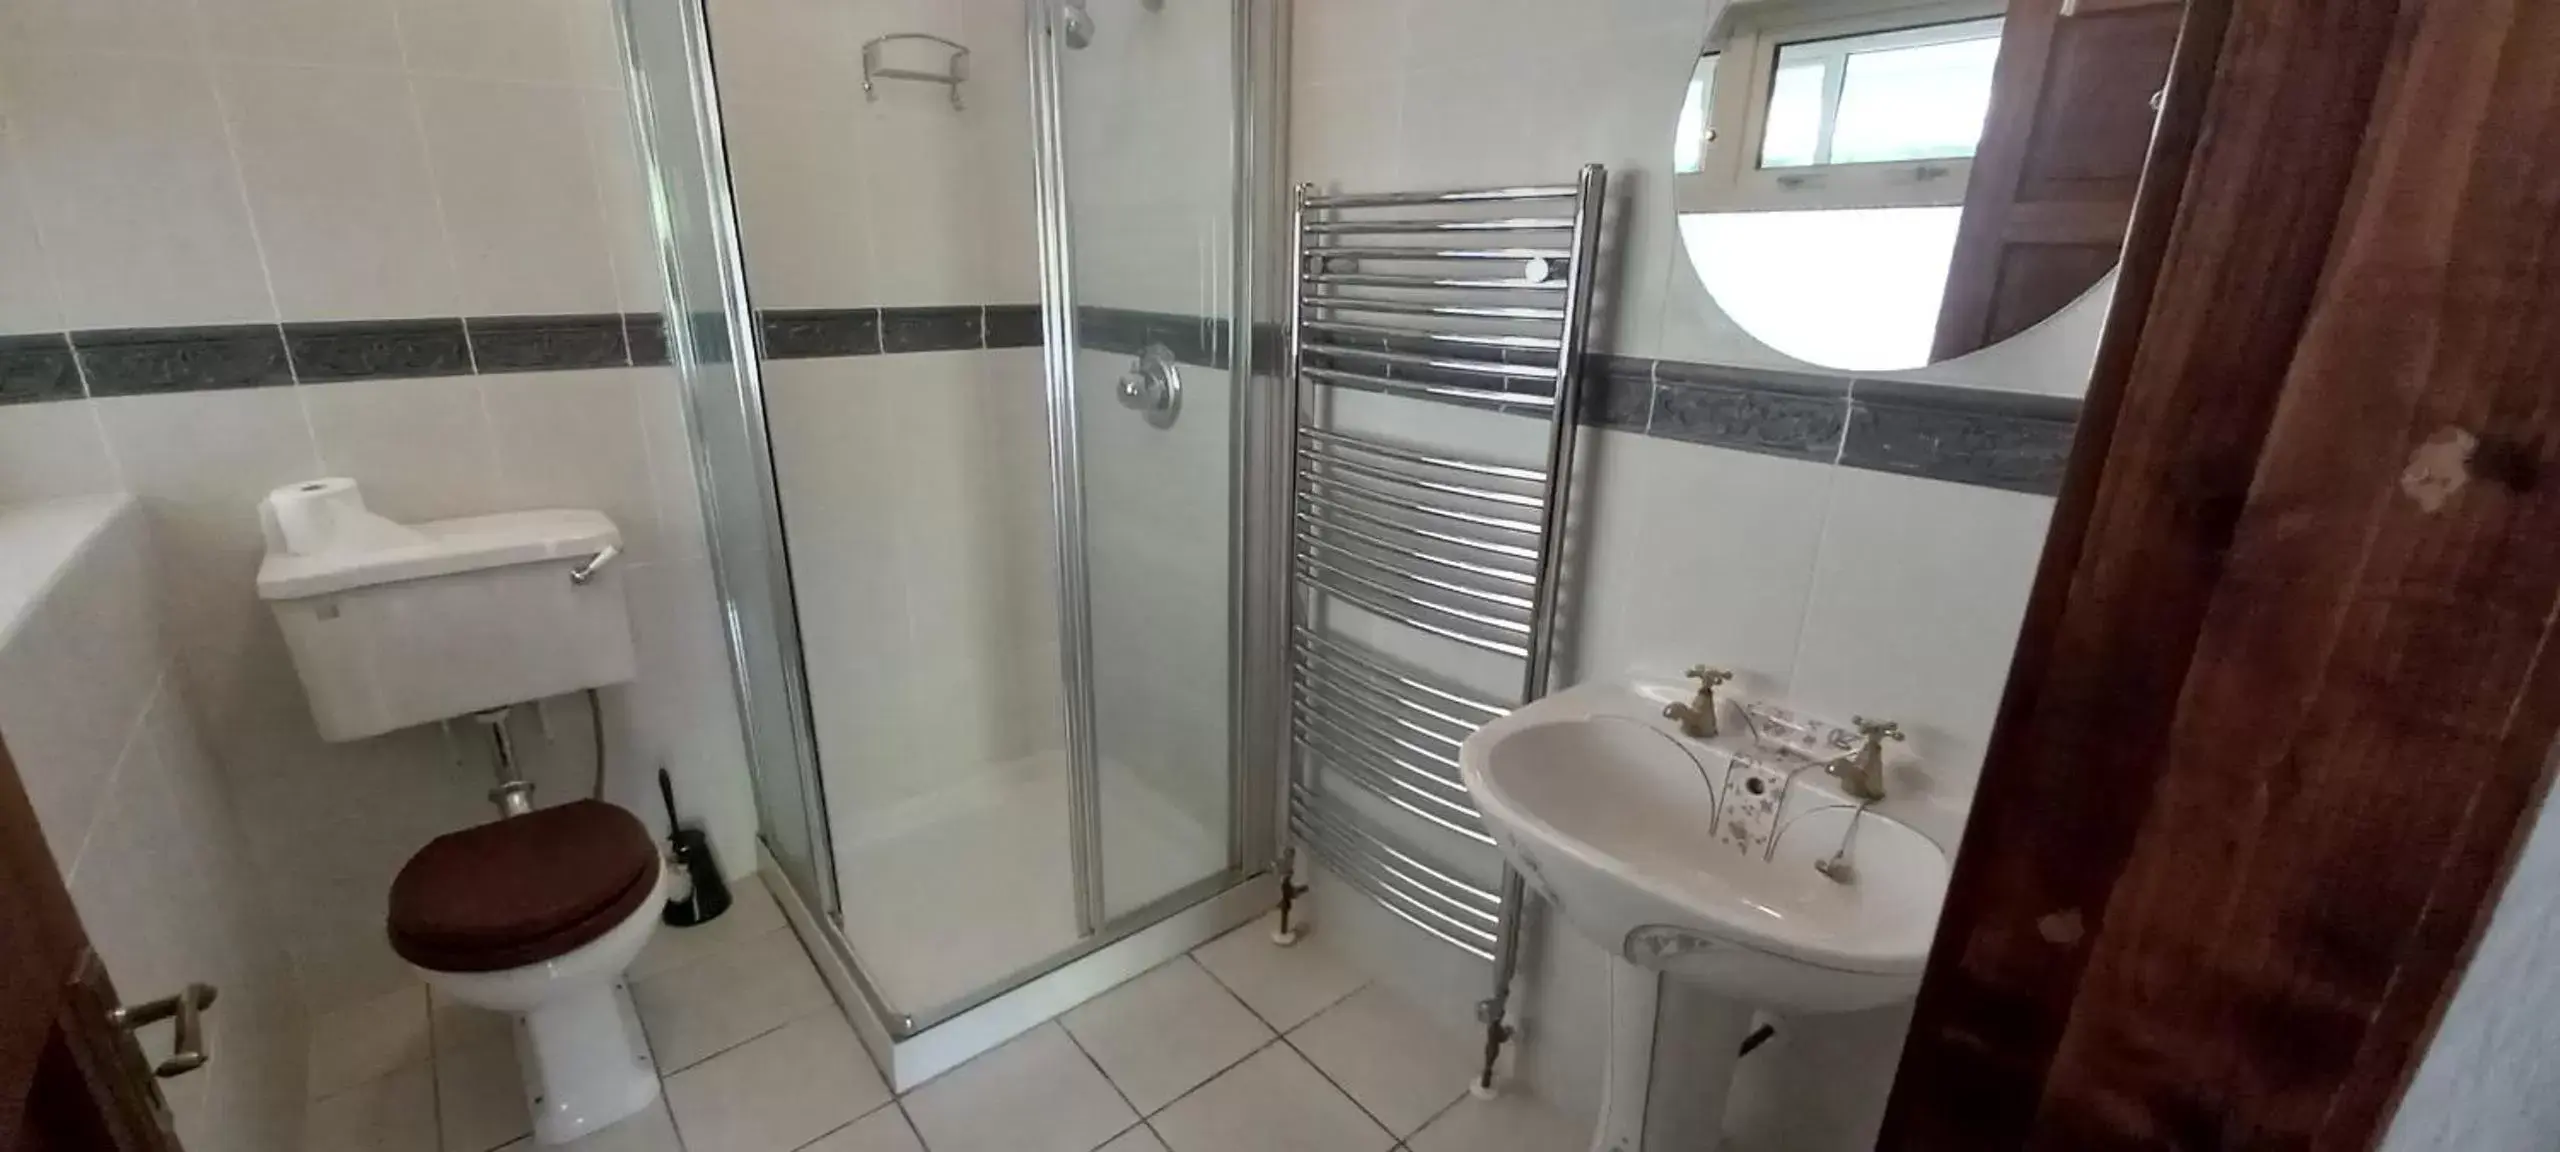 Bathroom in Ardsallagh Lodge